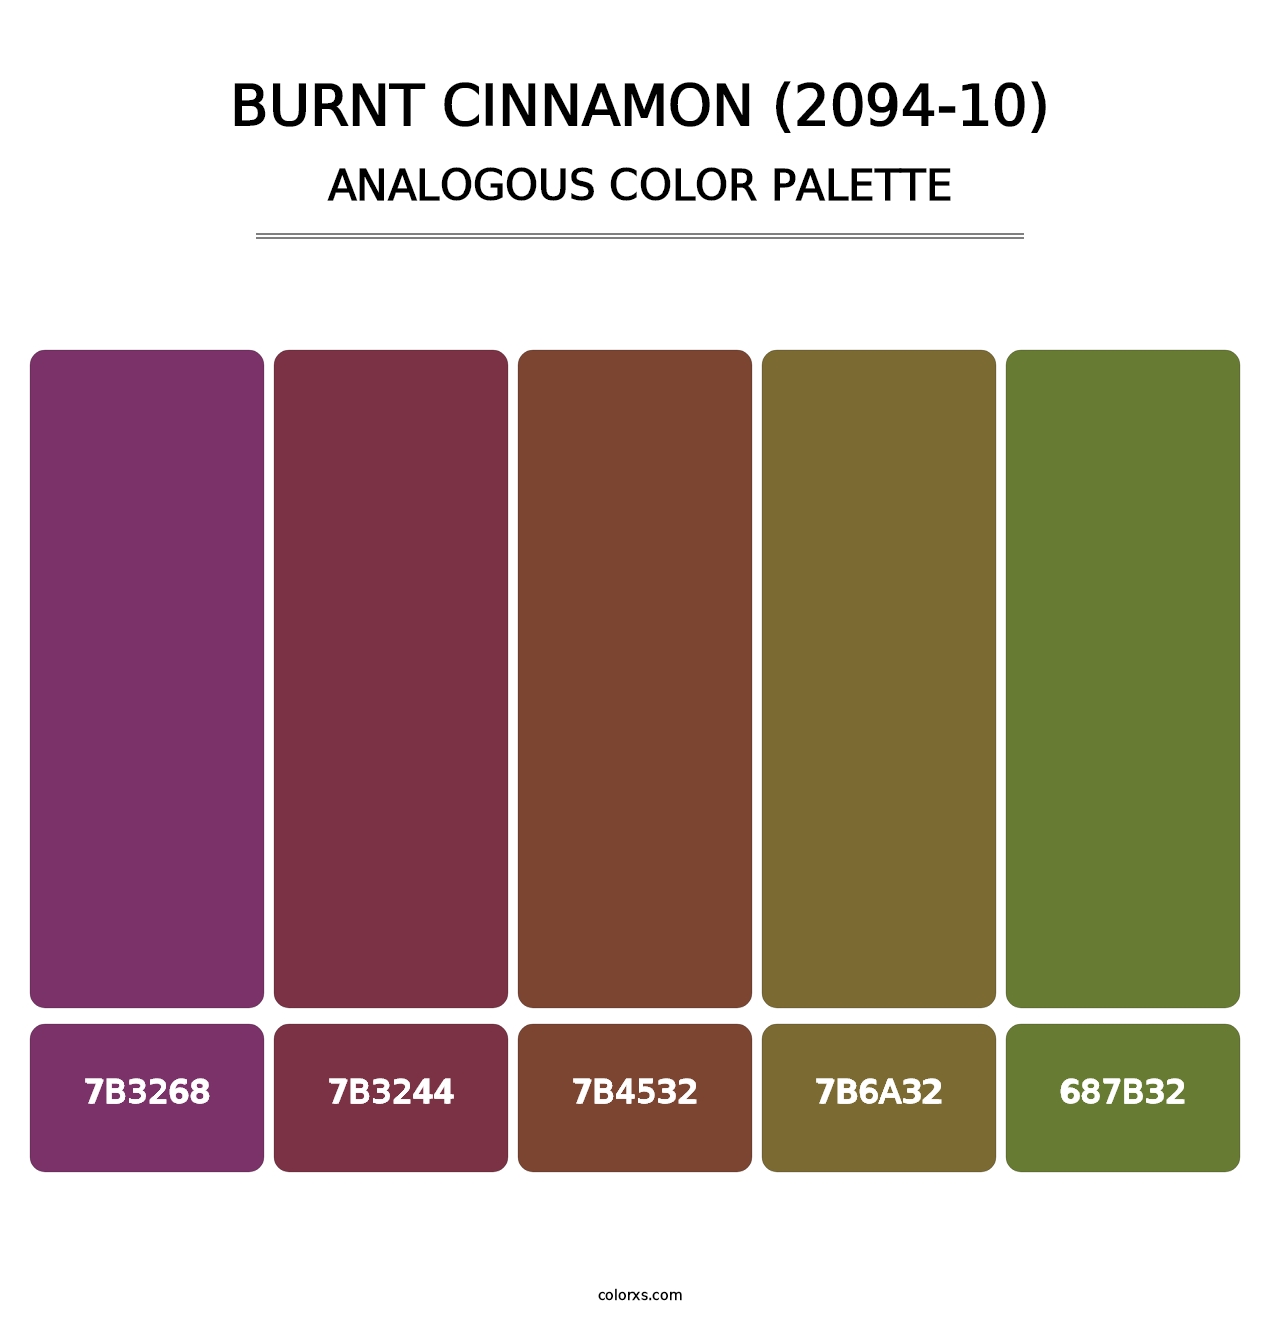 Burnt Cinnamon (2094-10) - Analogous Color Palette